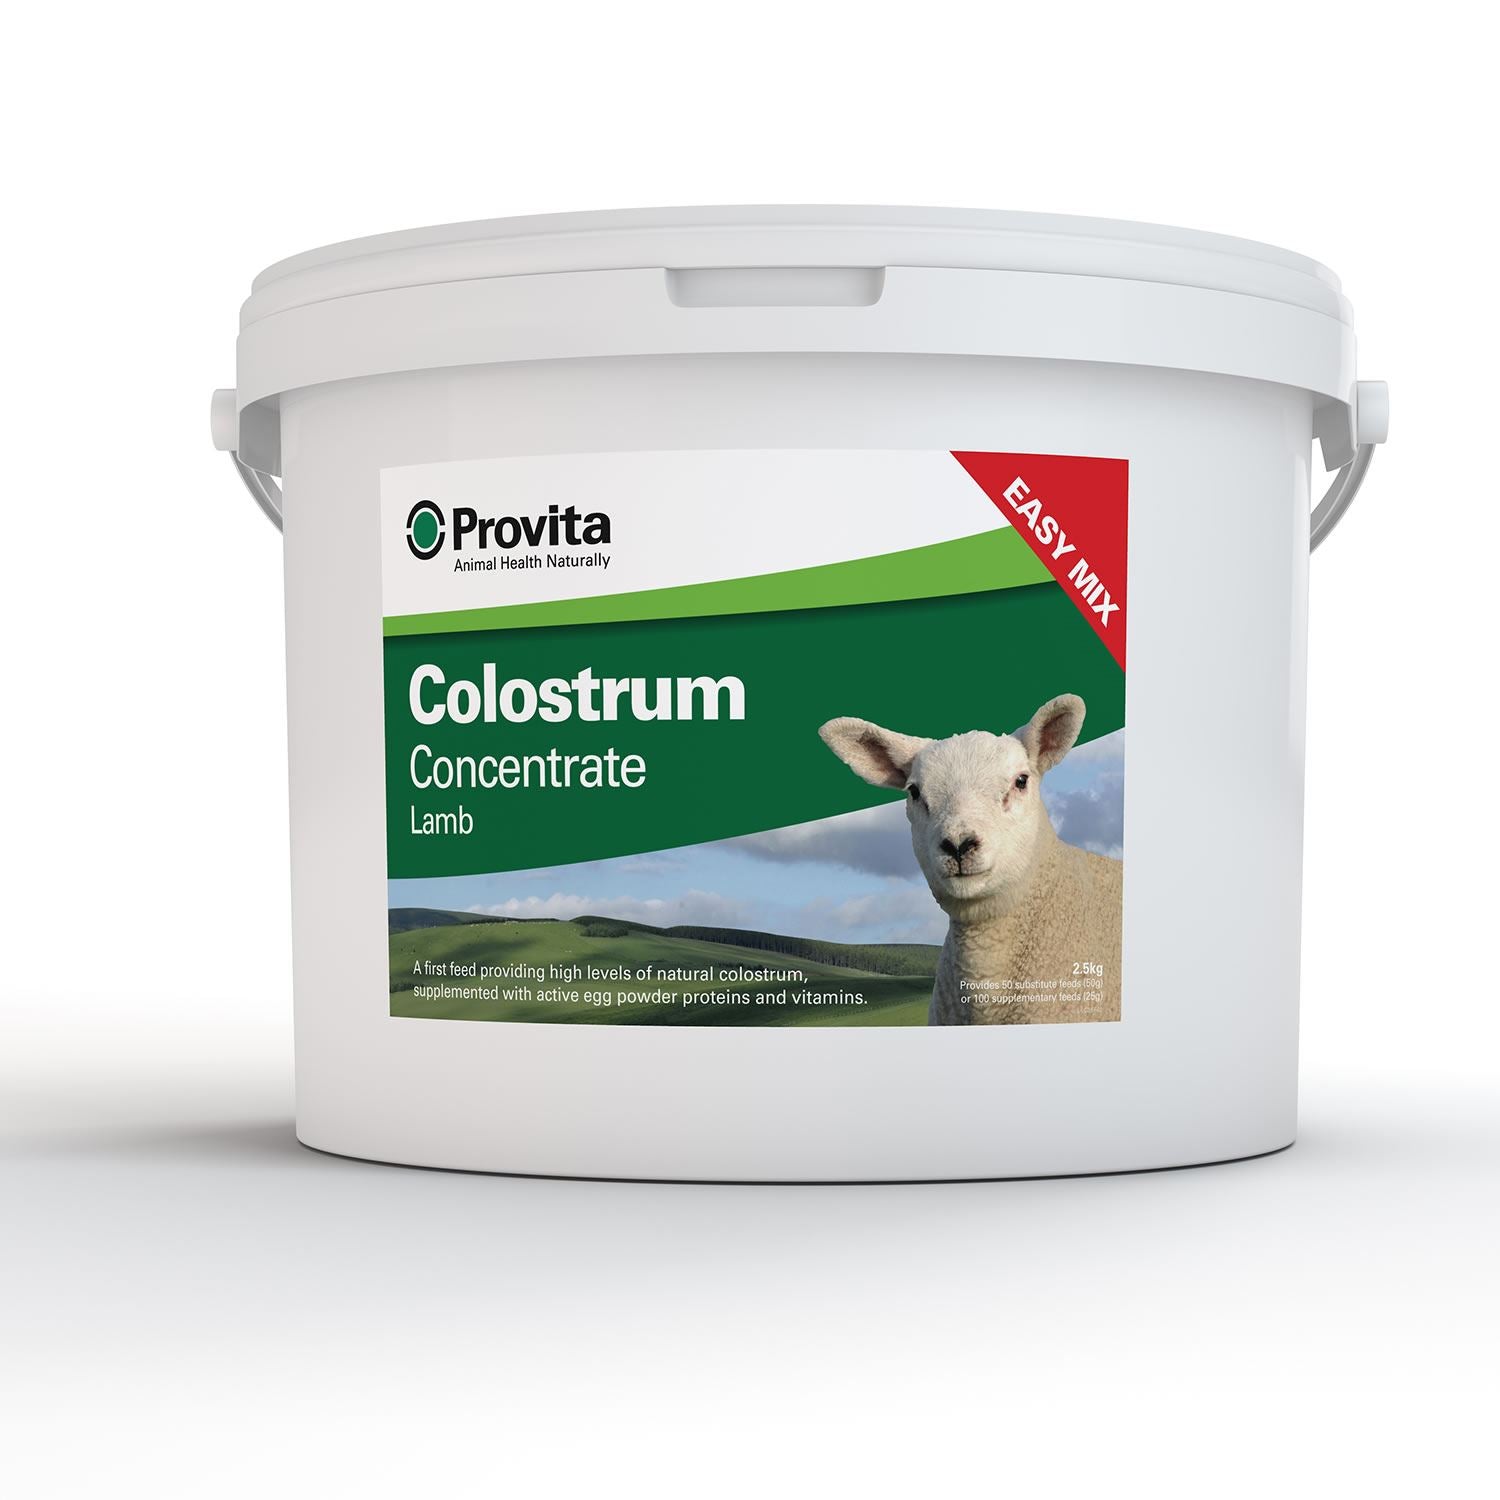 Provita Lamb Colostrum - Just Horse Riders